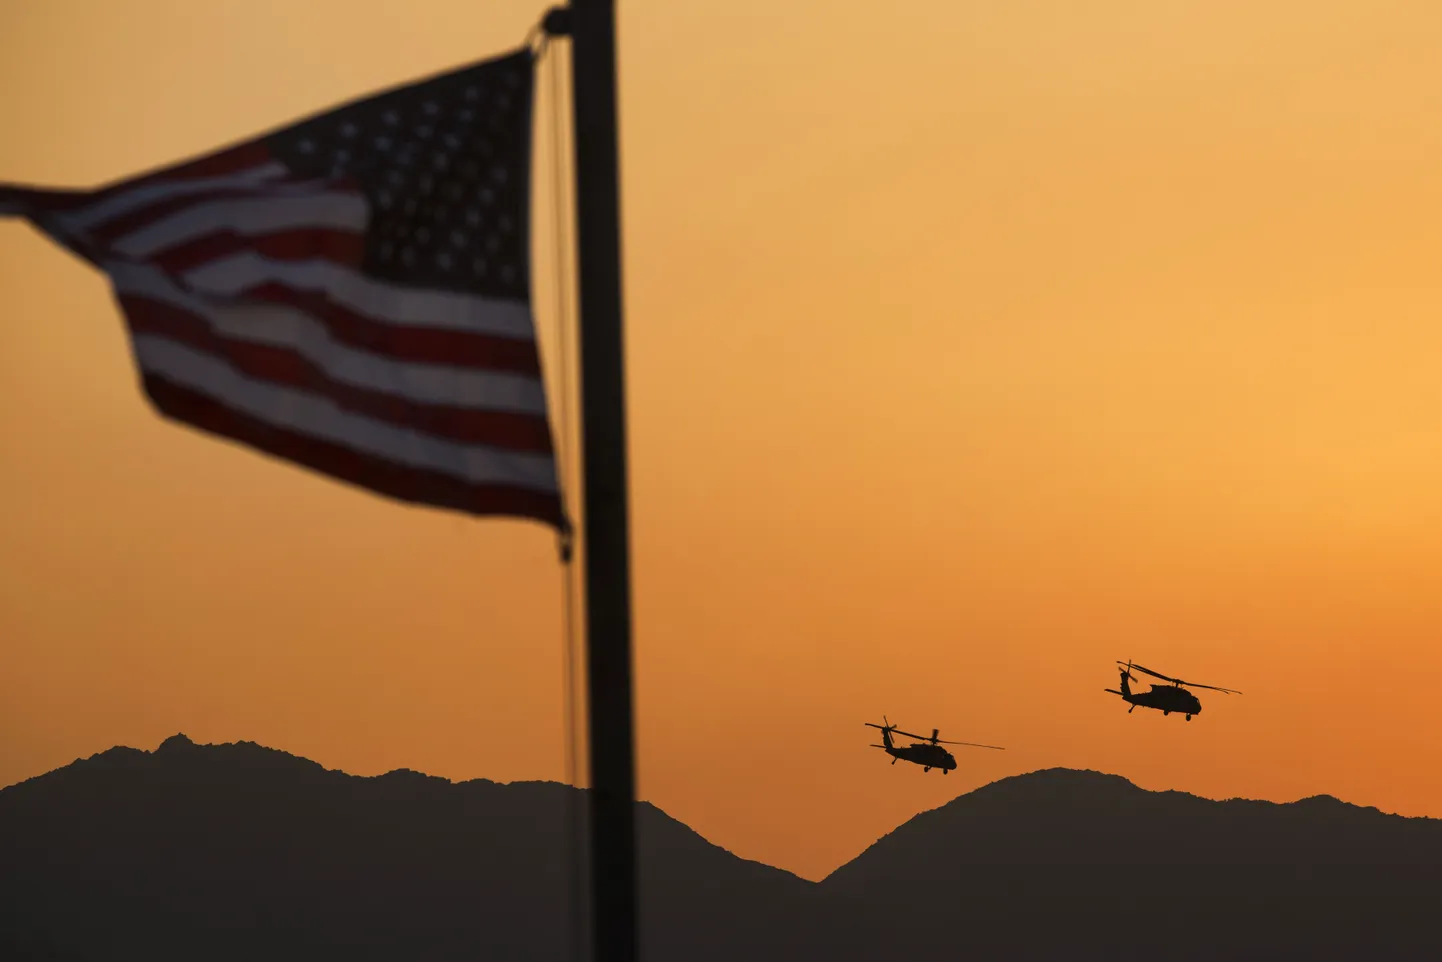 USA UH-60 Blackhawk helikopterid Laghmani provintsis Afganistanis.